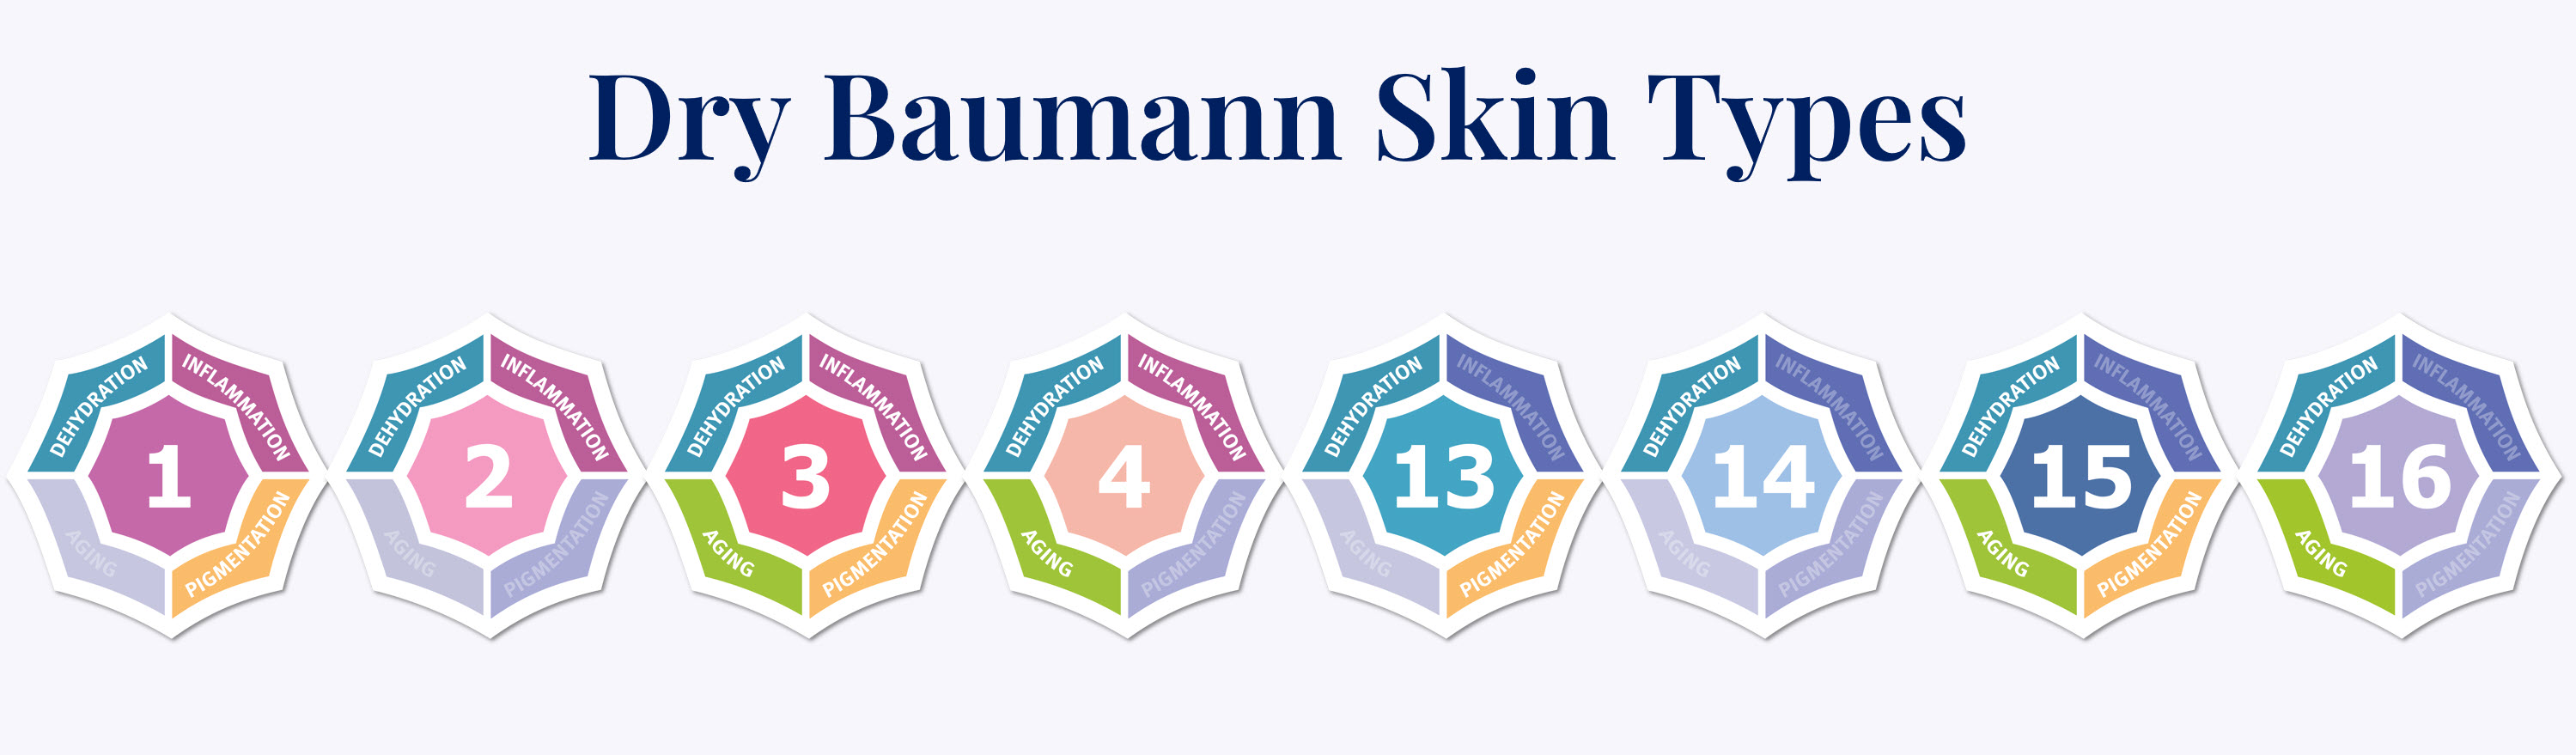 Baumann Skin Types Dry Skin.jpg